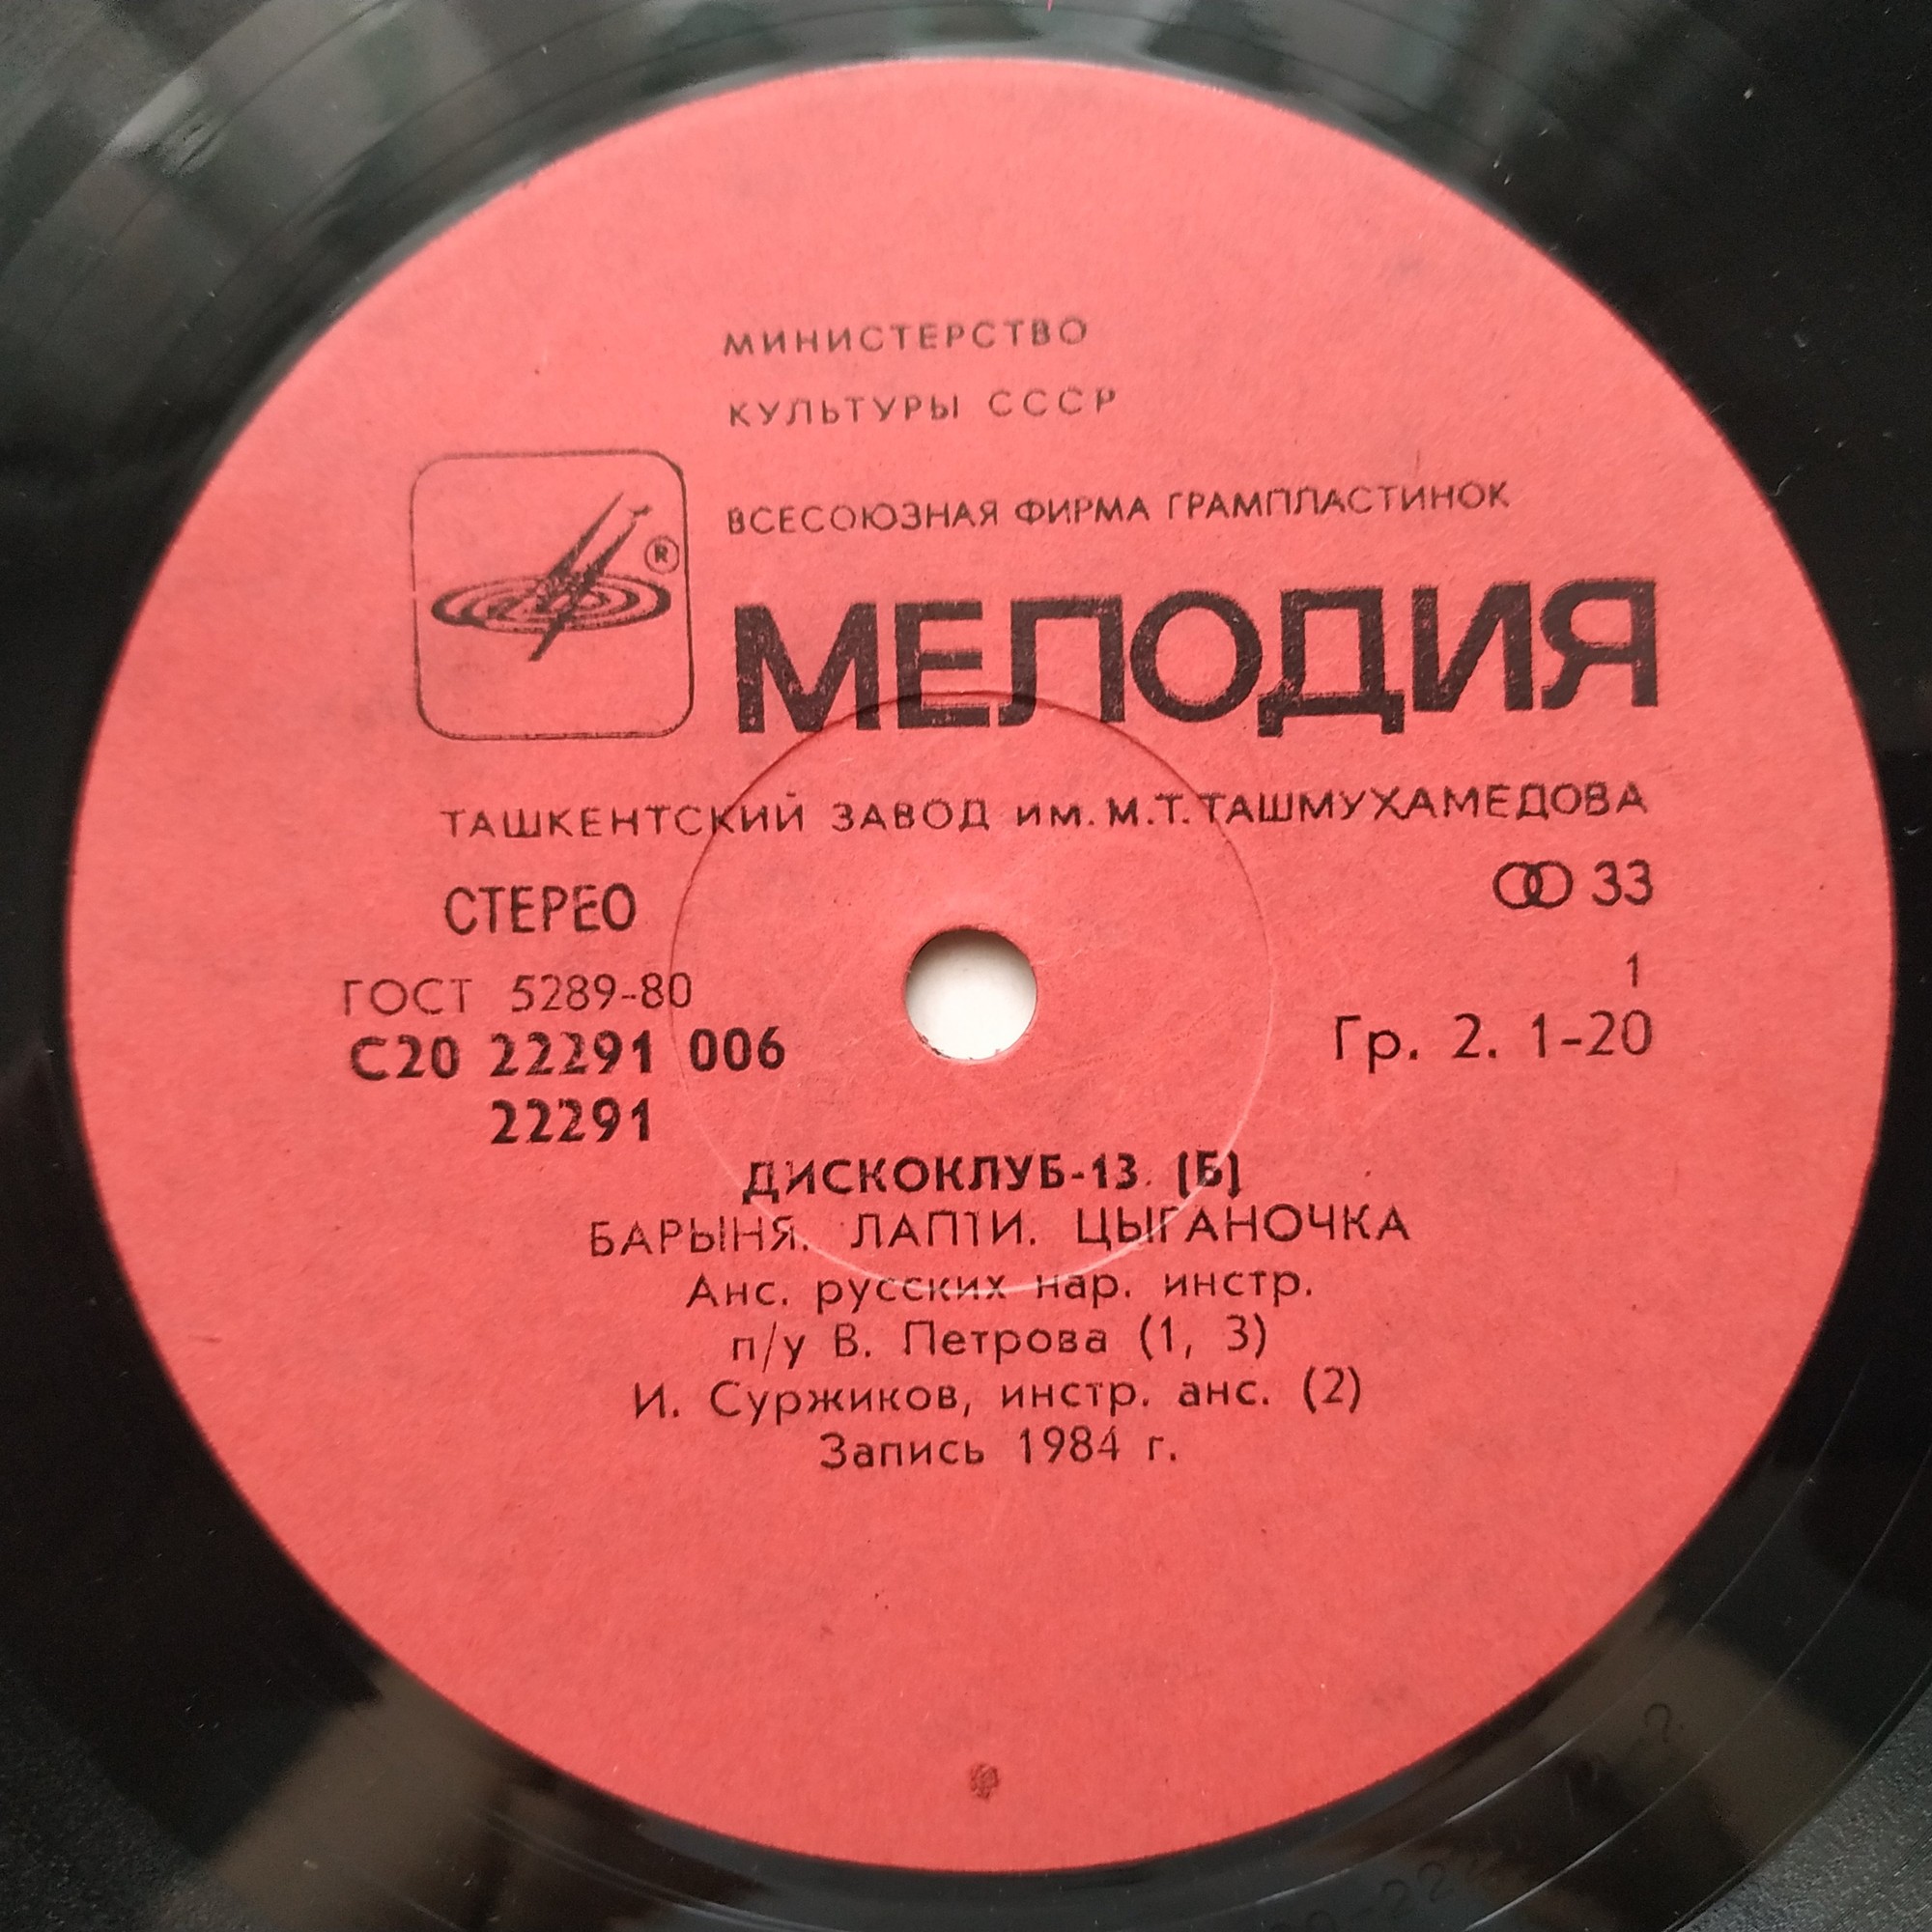 ДИСКОКЛУБ 13 (Б). Русские народные песни и мелодии